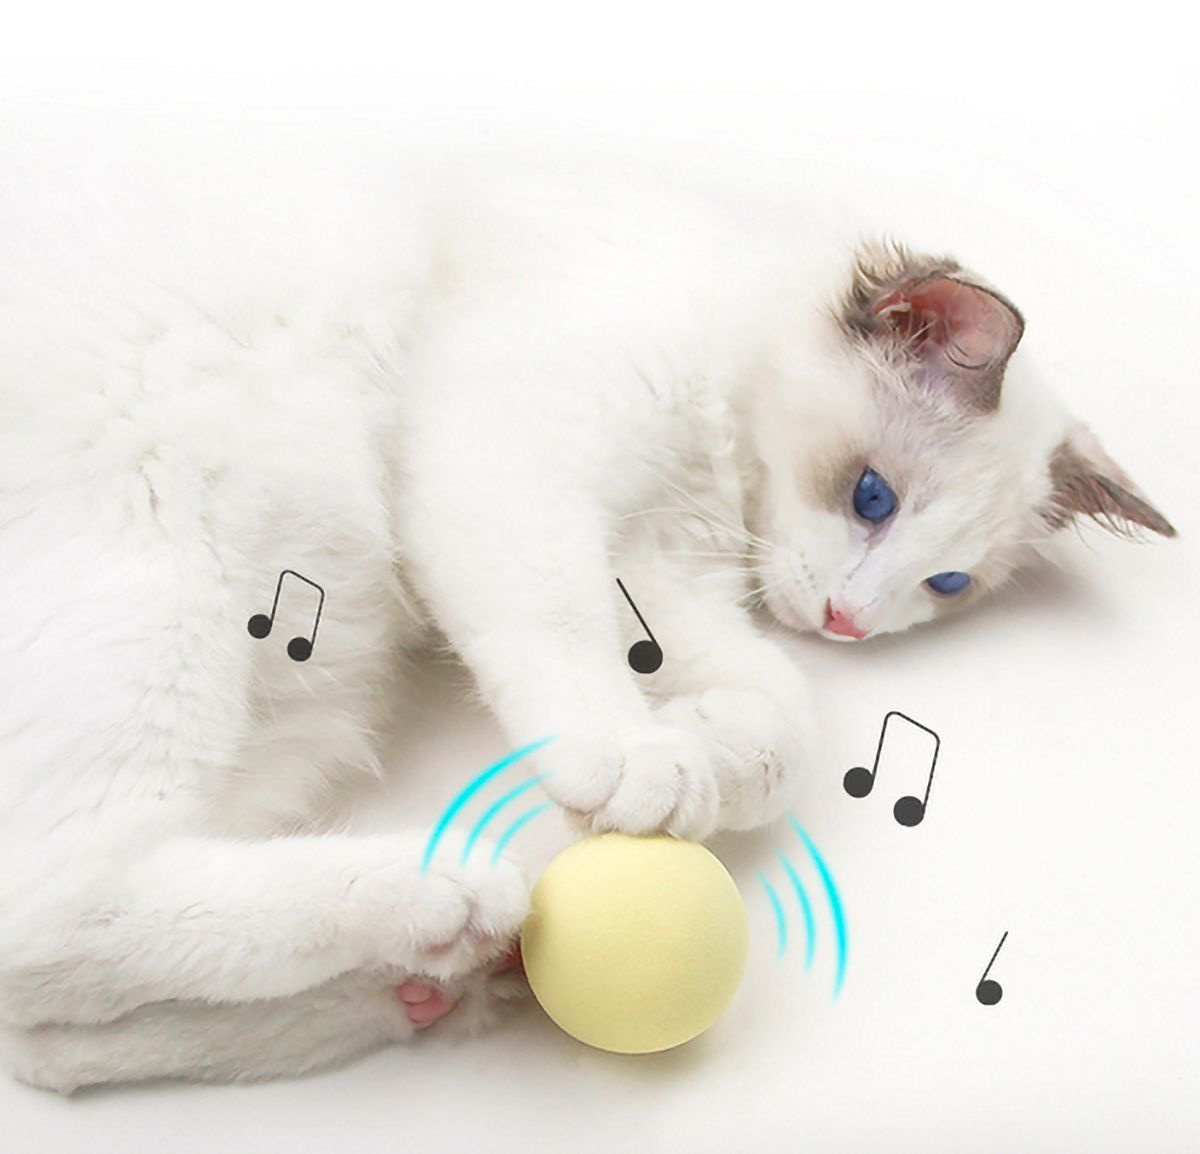 Игрушка для кошек интерактивная, с натуральными звуками птиц и кошачьей мятой внутри.